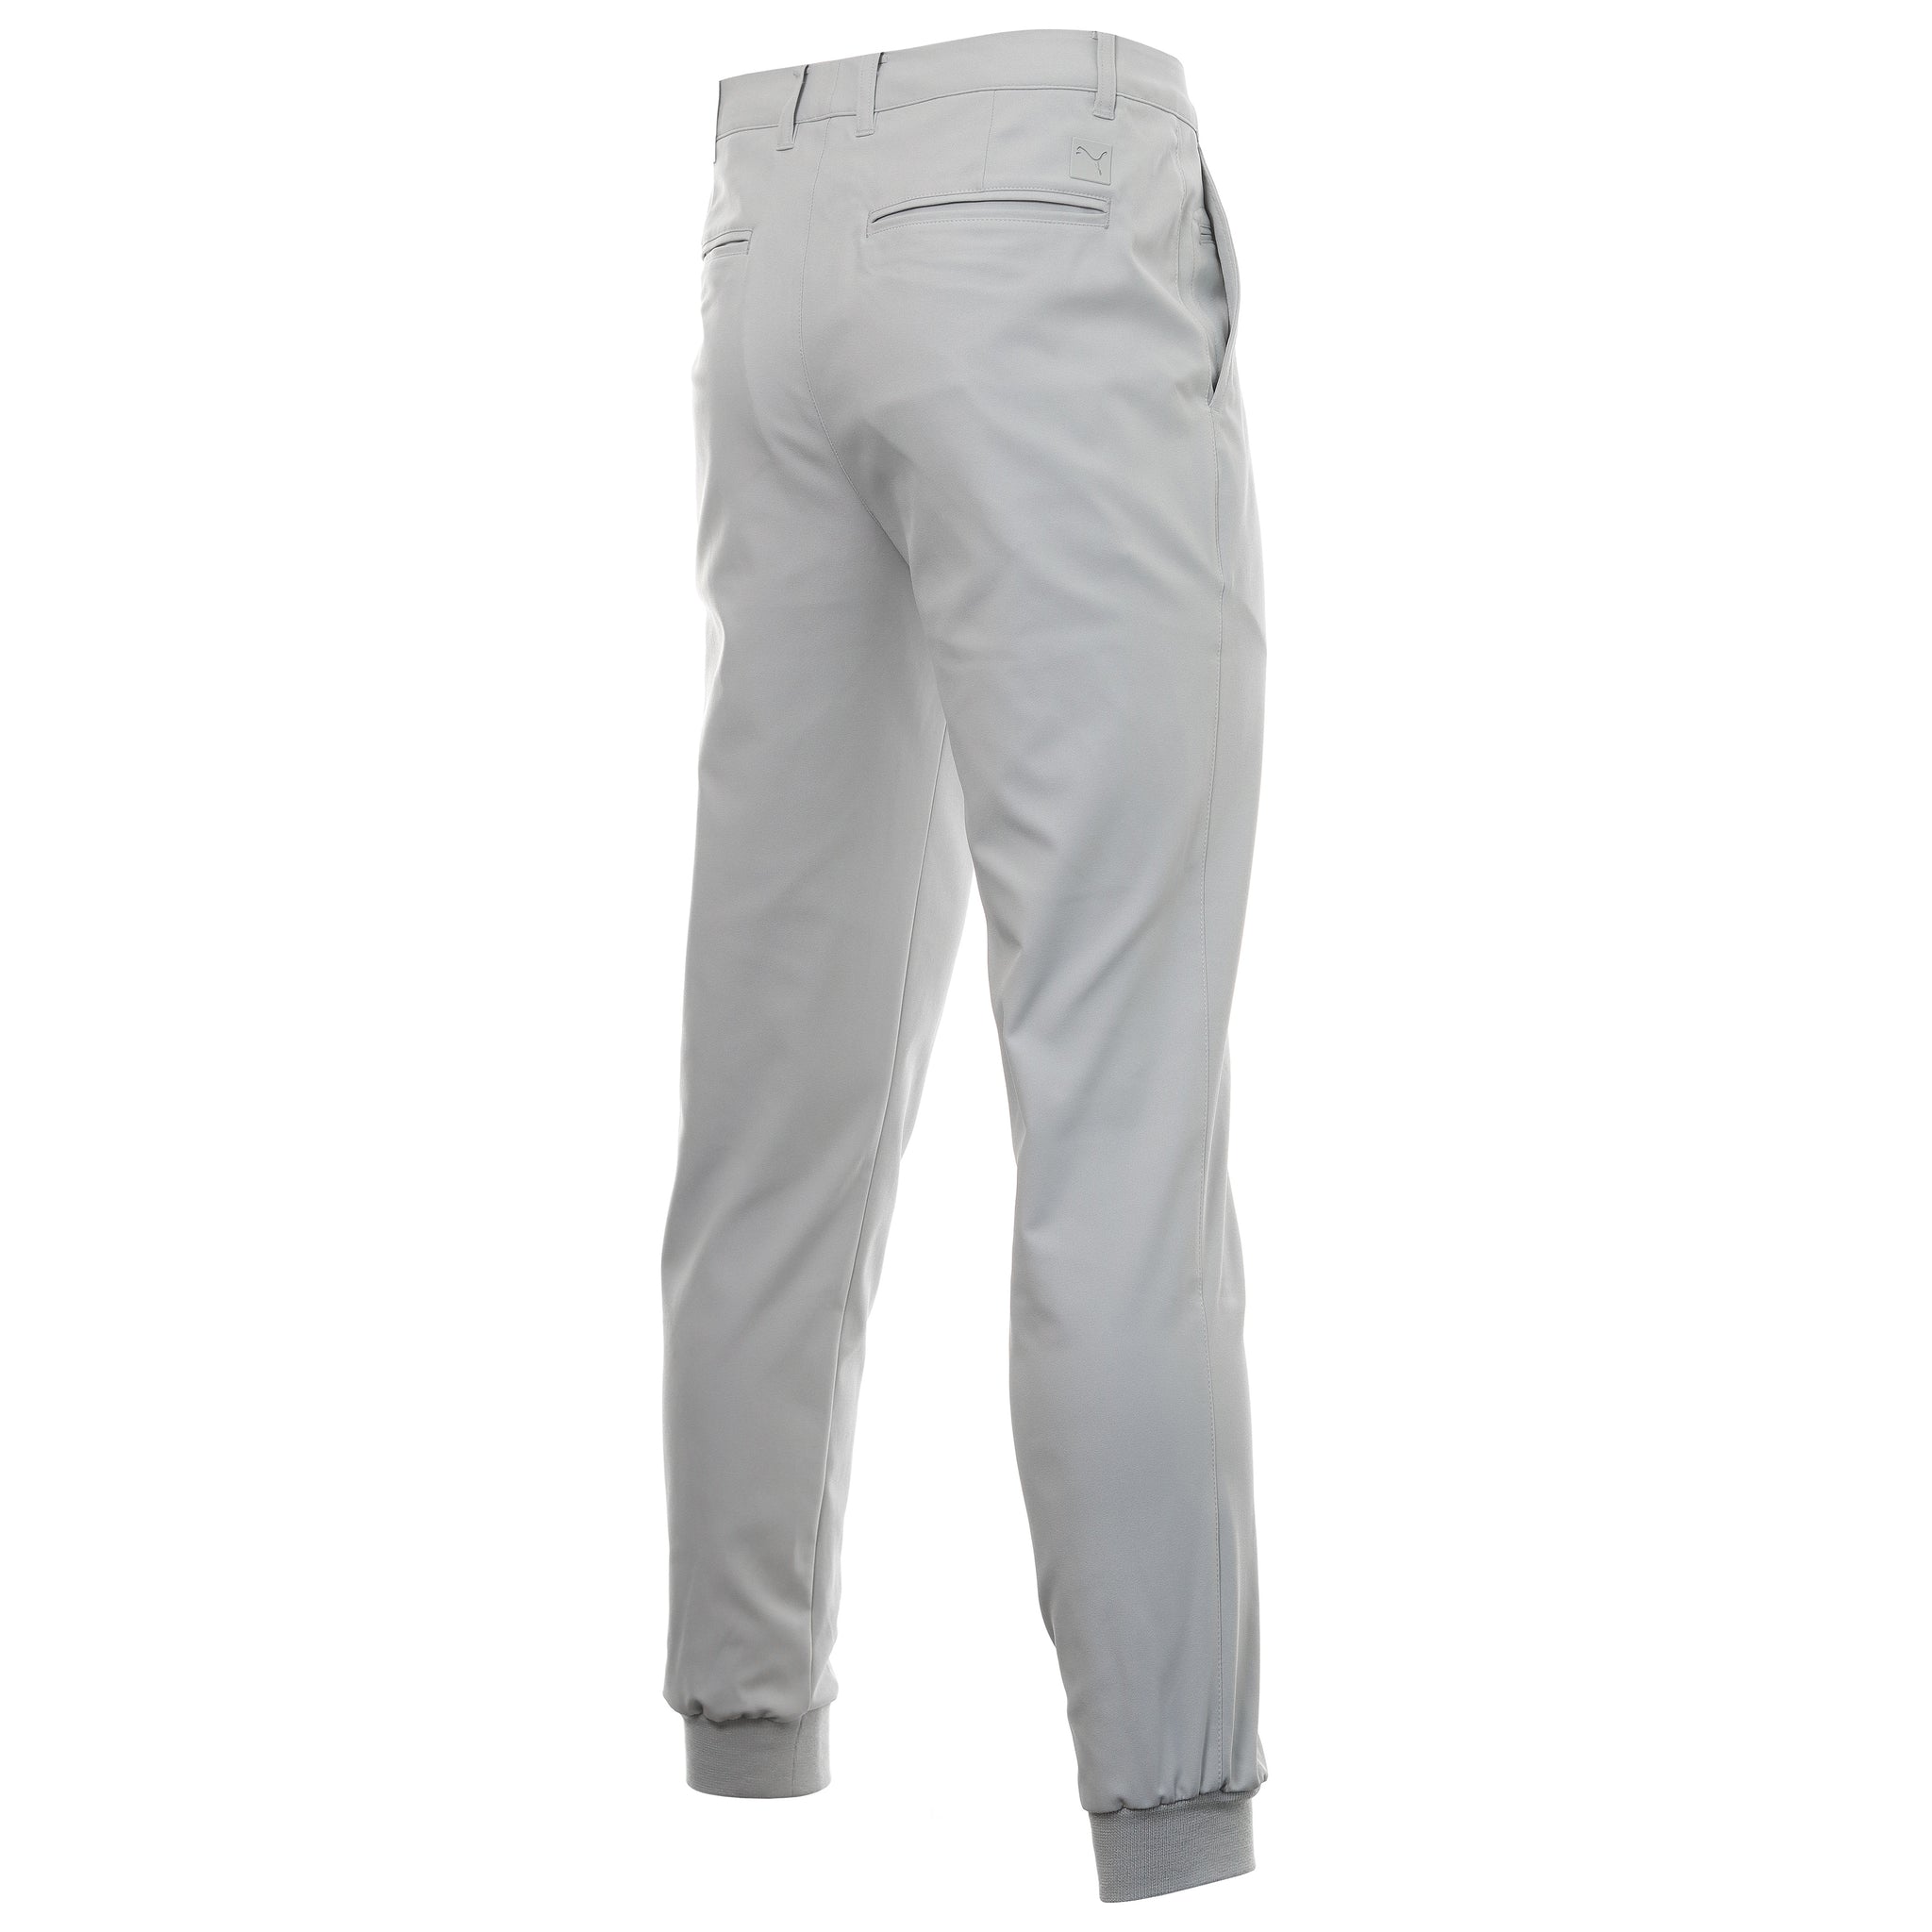 puma-golf-dealer-jogger-535527-ash-grey-03